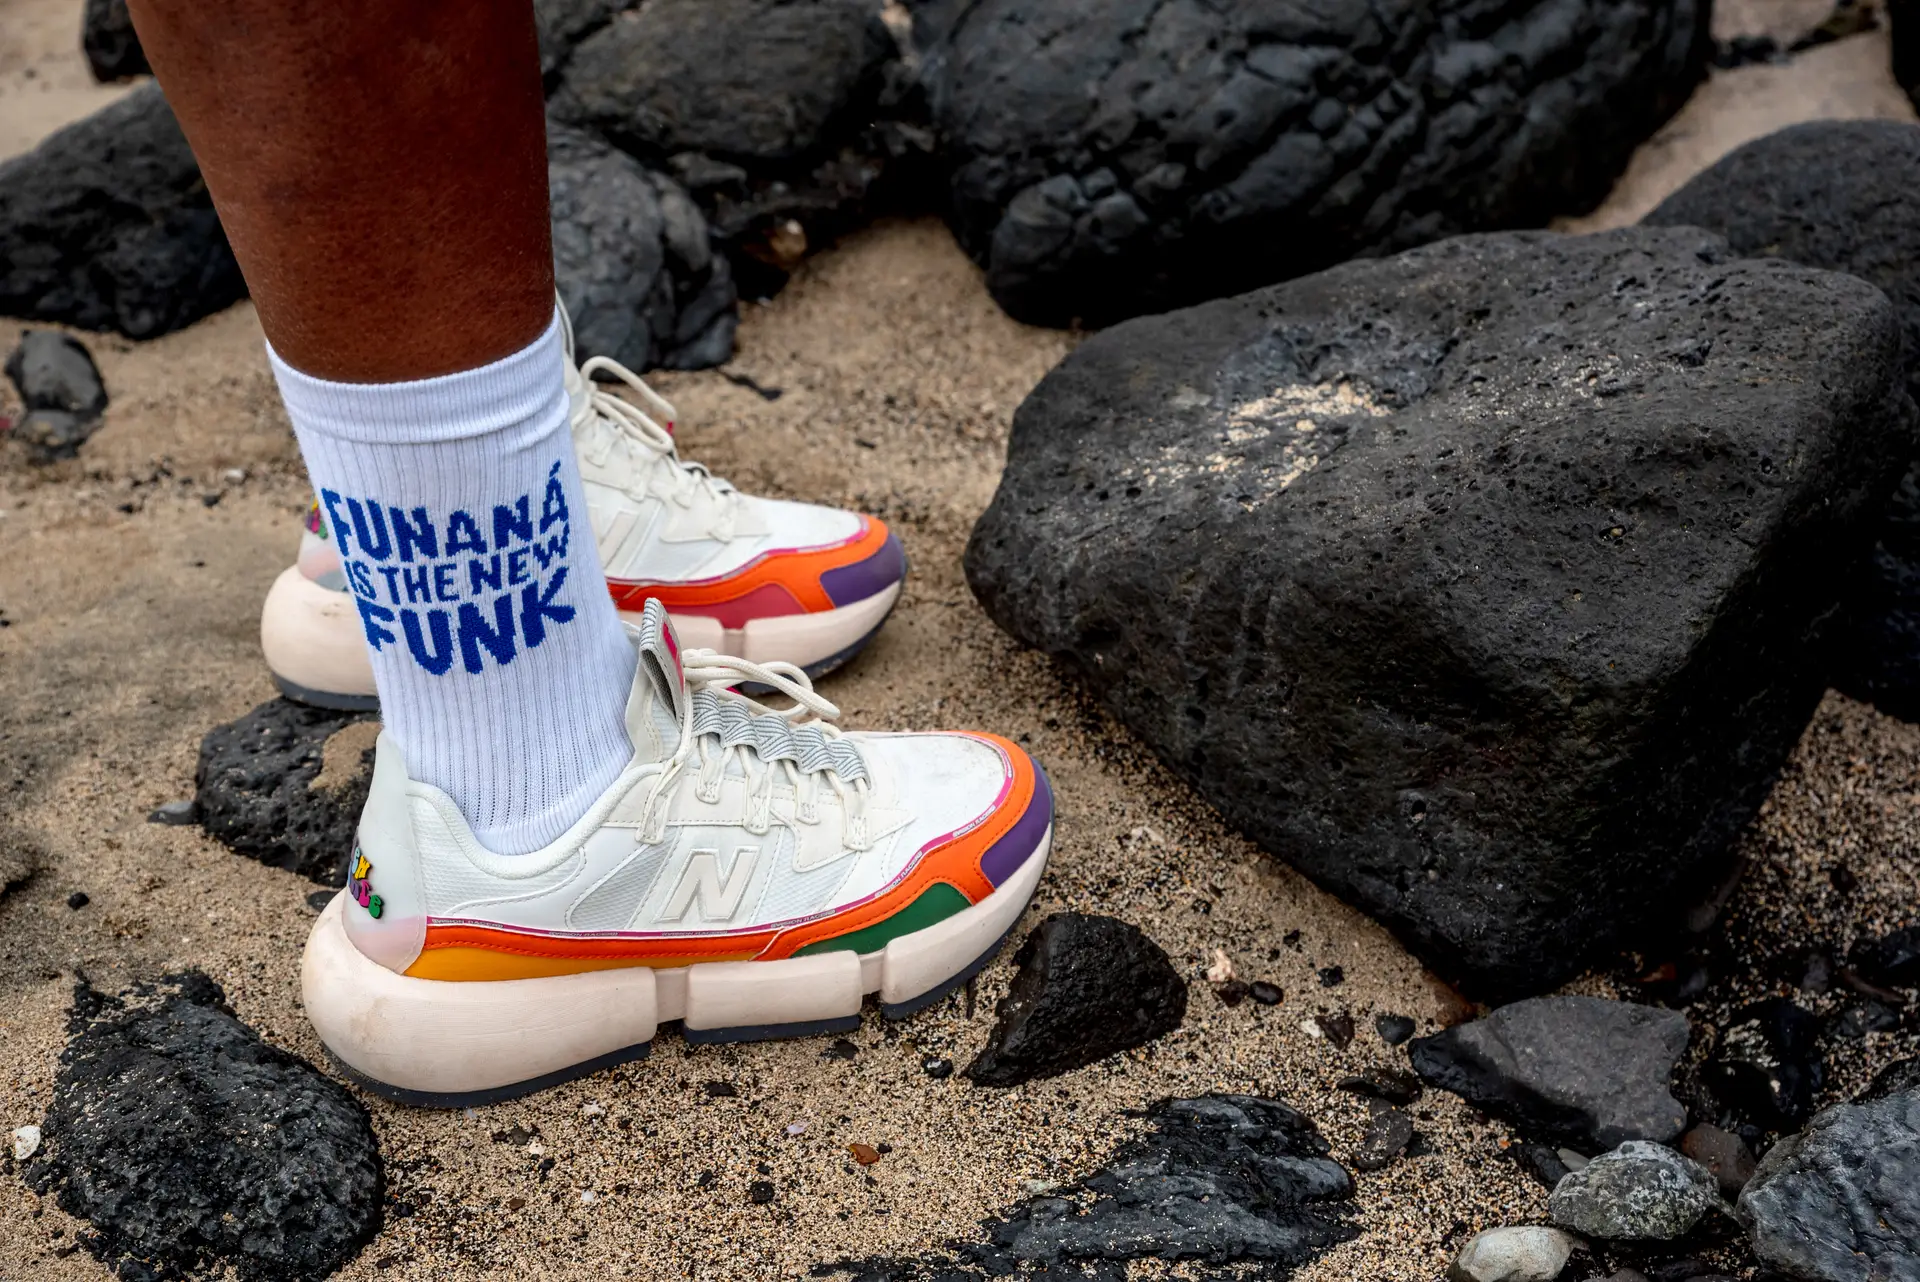 É também através da roupa e dos acessórios que Dino D'Santiago se expressa. Aqui a escolha recaiu sobre umas meias com a mensagem "Funaná is the new funk" ("Funaná é o novo funk").